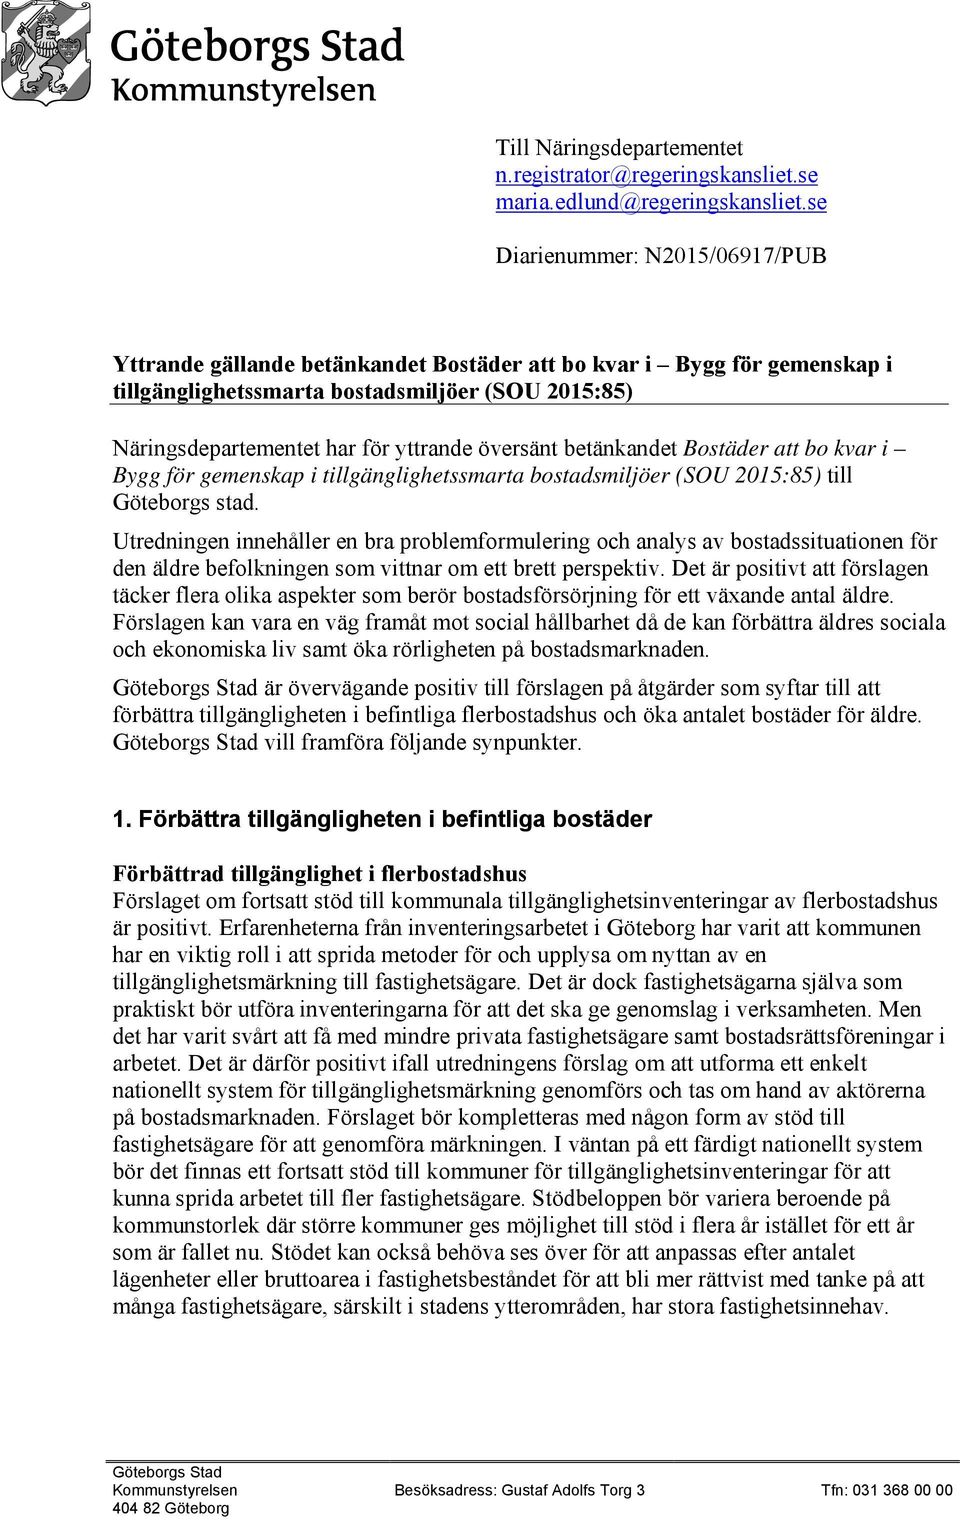 översänt betänkandet Bostäder att bo kvar i Bygg för gemenskap i tillgänglighetssmarta bostadsmiljöer (SOU 2015:85) till Göteborgs stad.